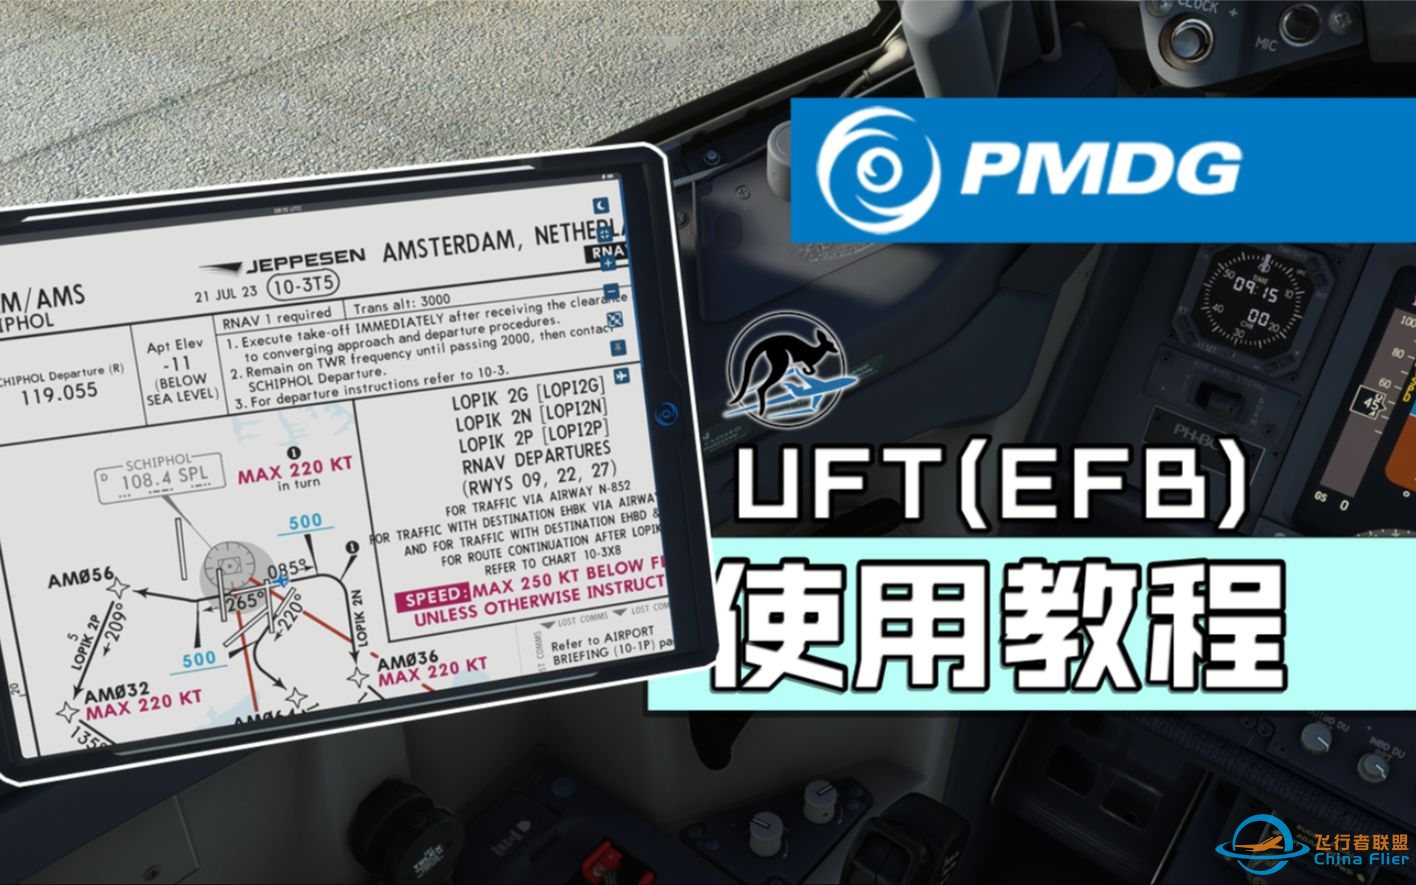 【微软飞行模拟】PMDG737 UFT（EFB）使用教程-9020 